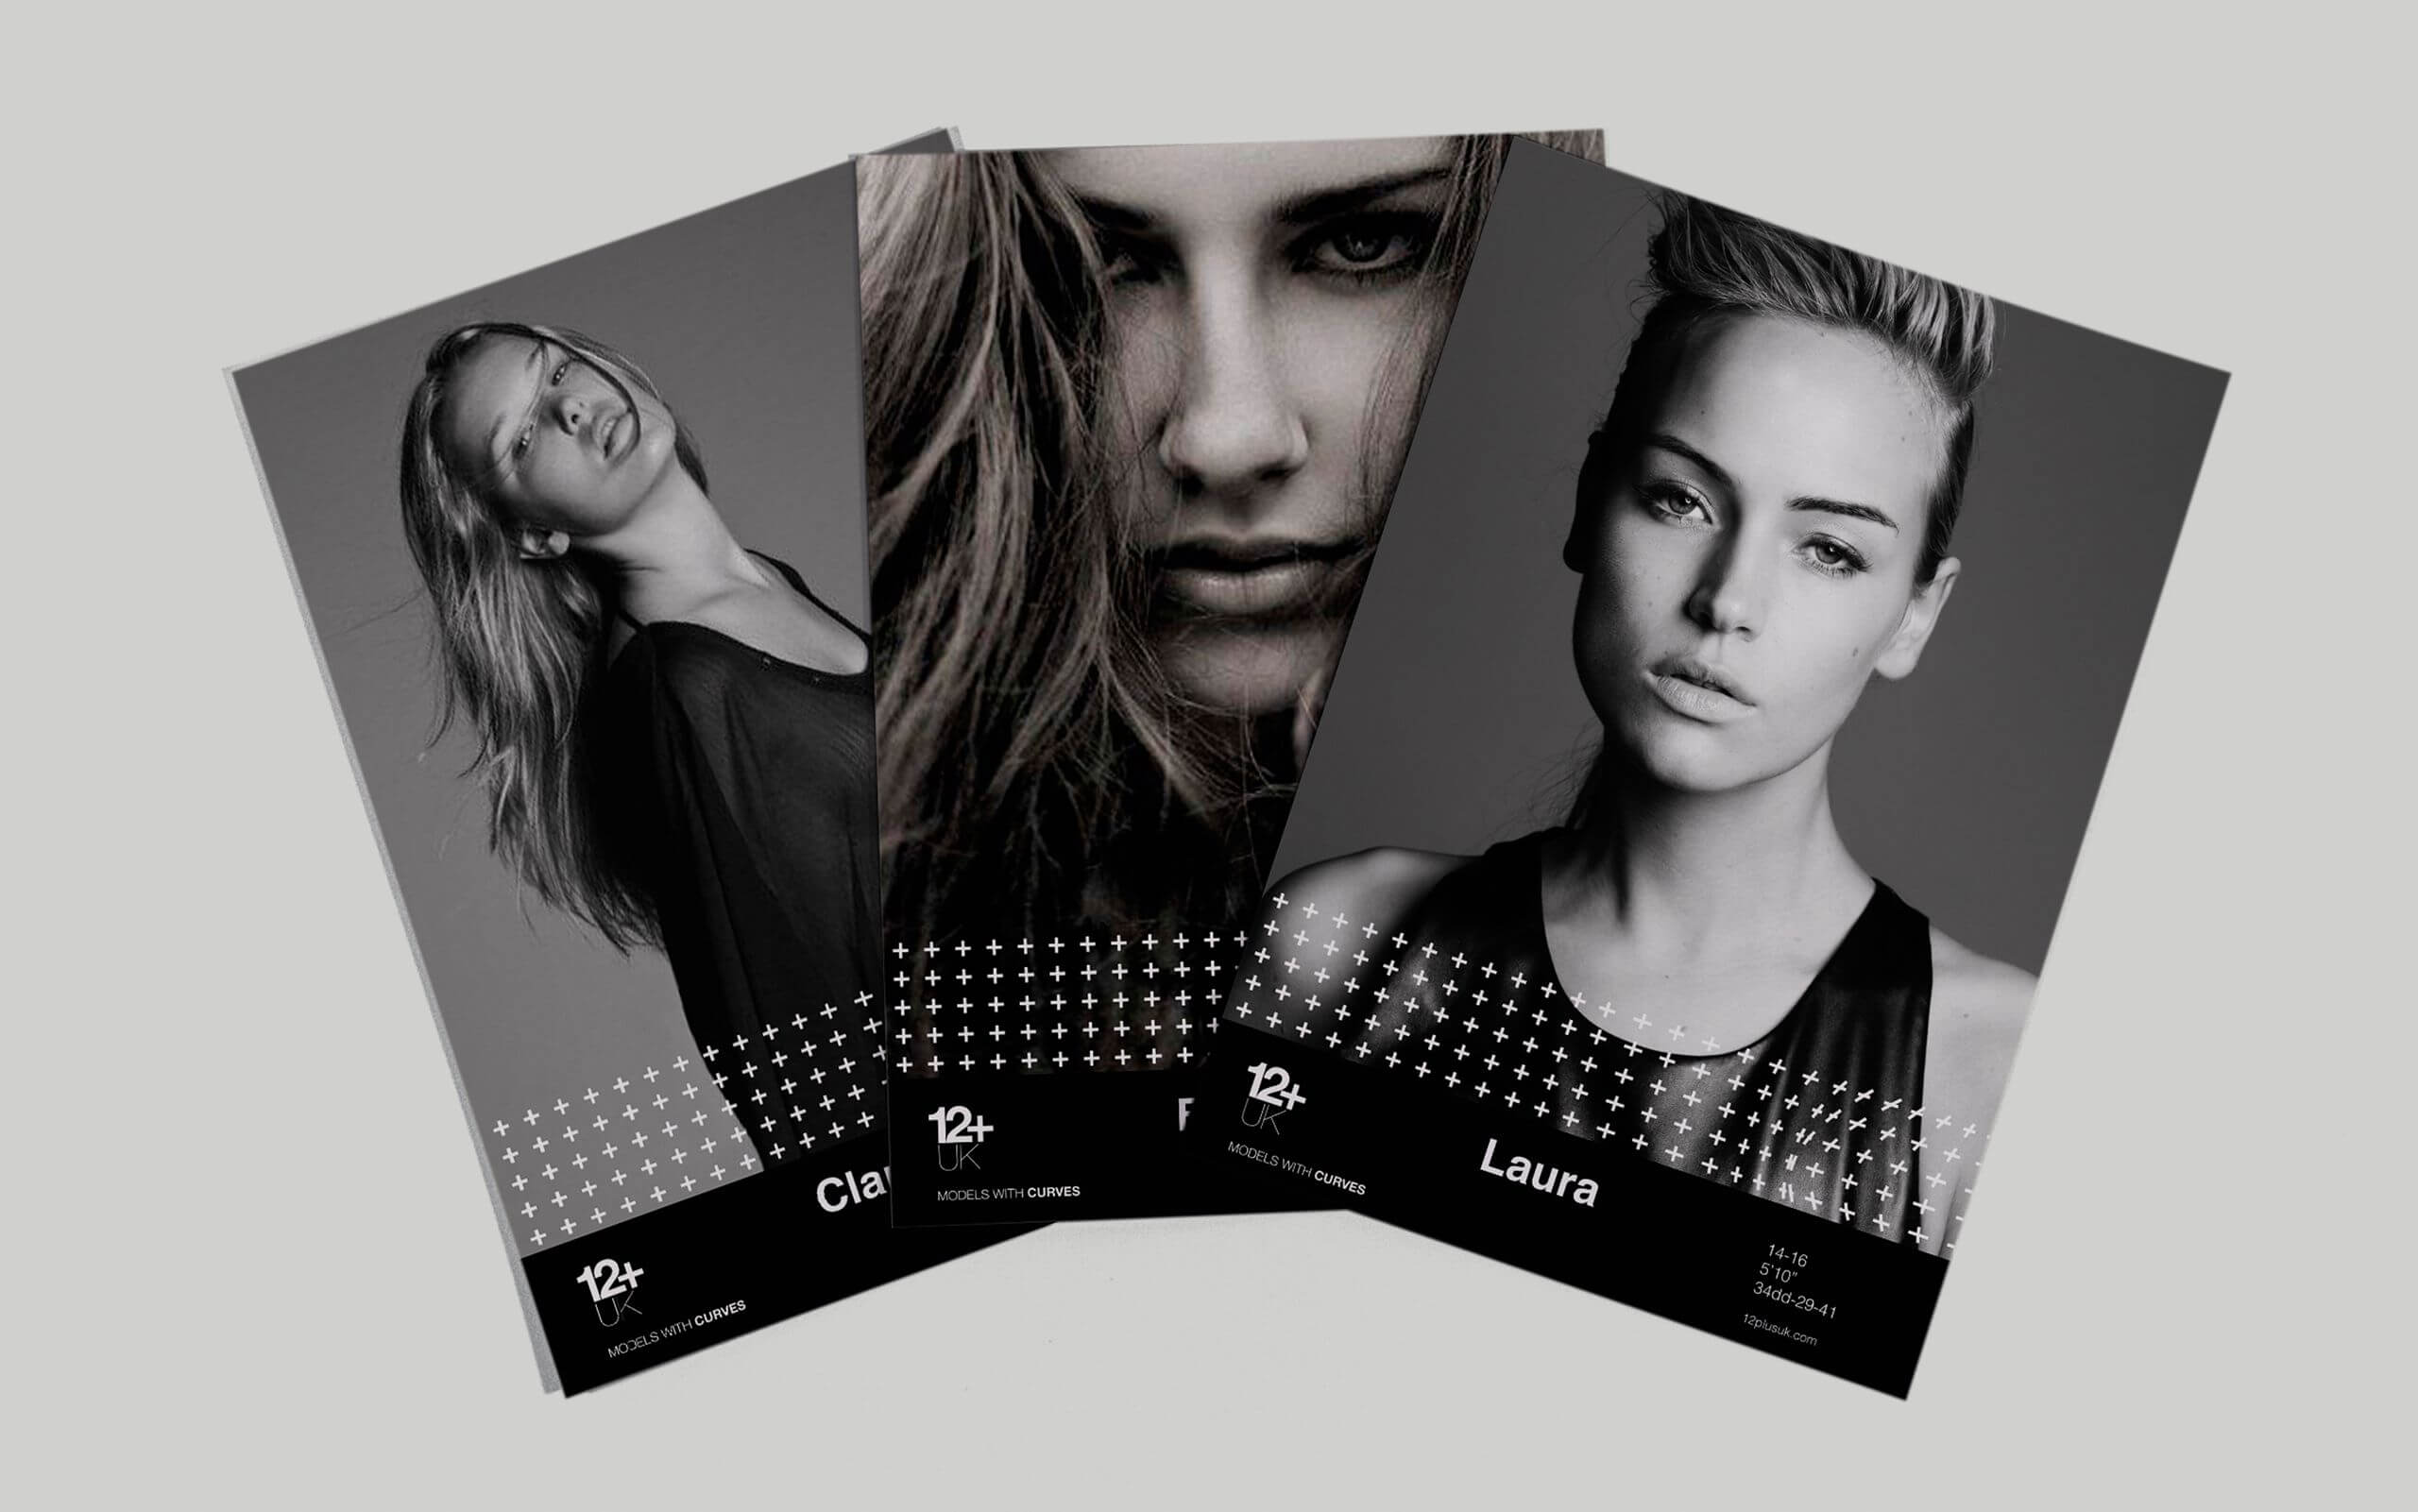 12+ UK model agency flyers